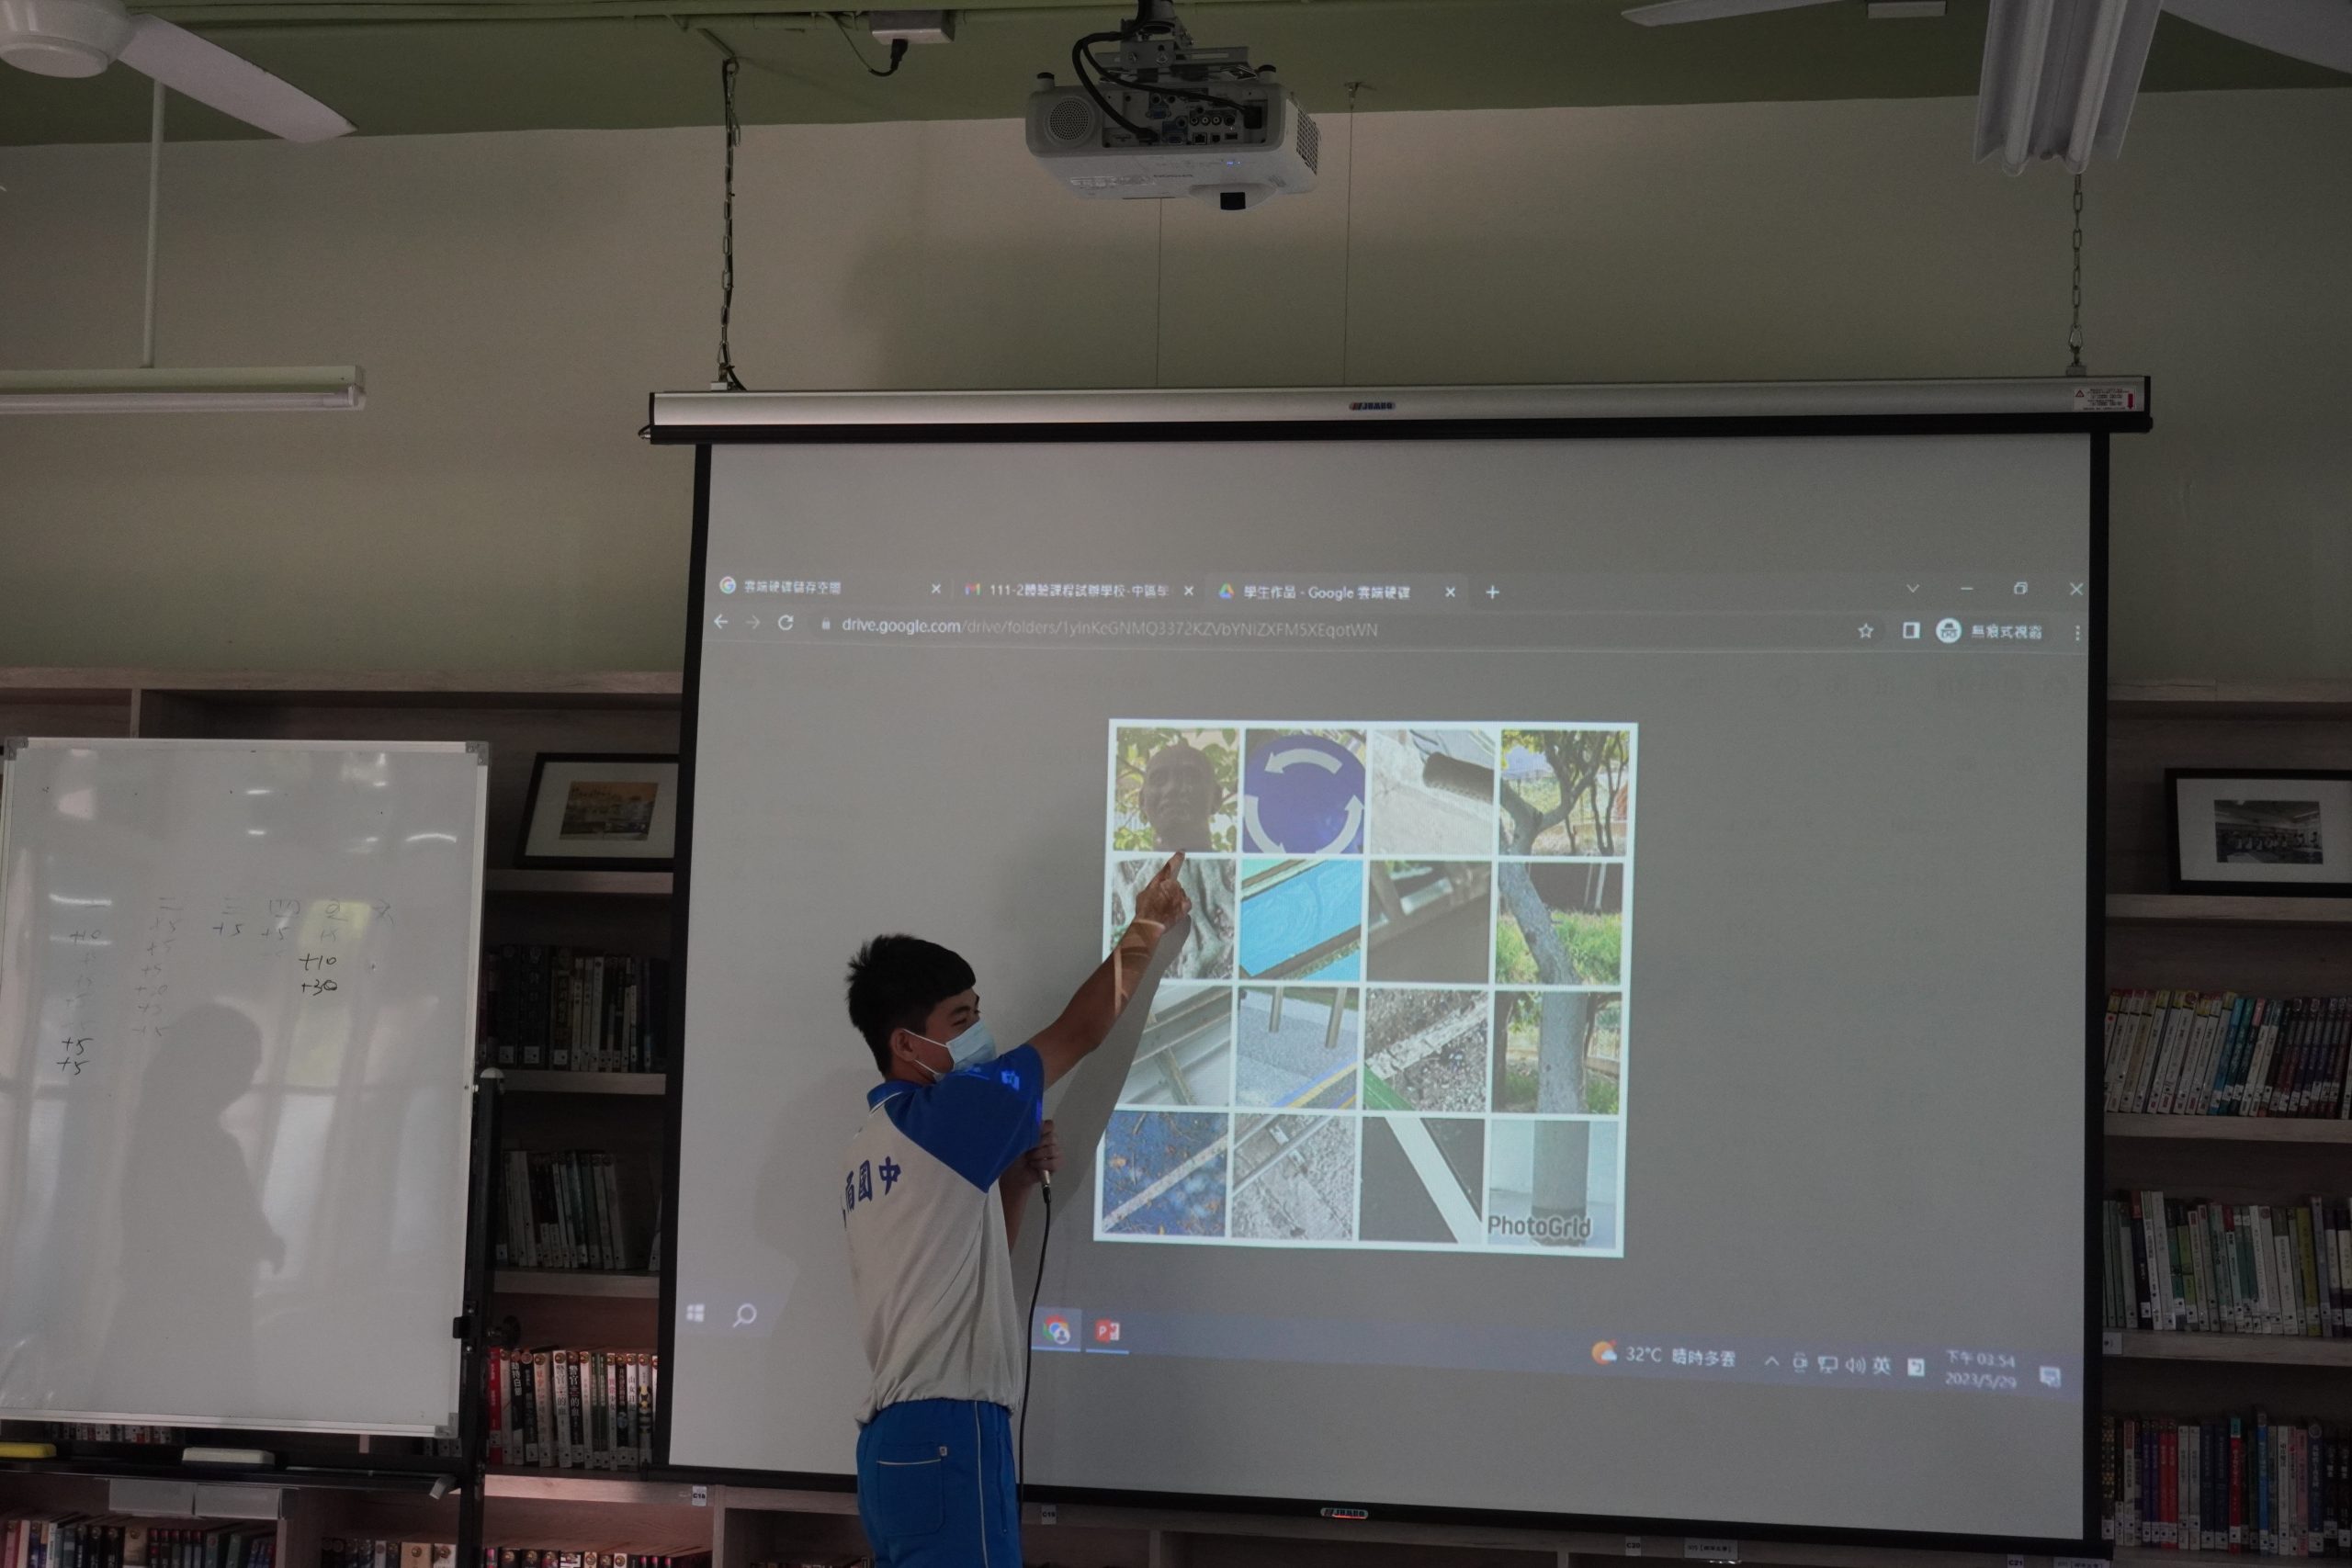 111學年度第二學期於苗栗縣立烏眉國民中學施辦自拍拼圖課程實作紀錄系列照片共21張